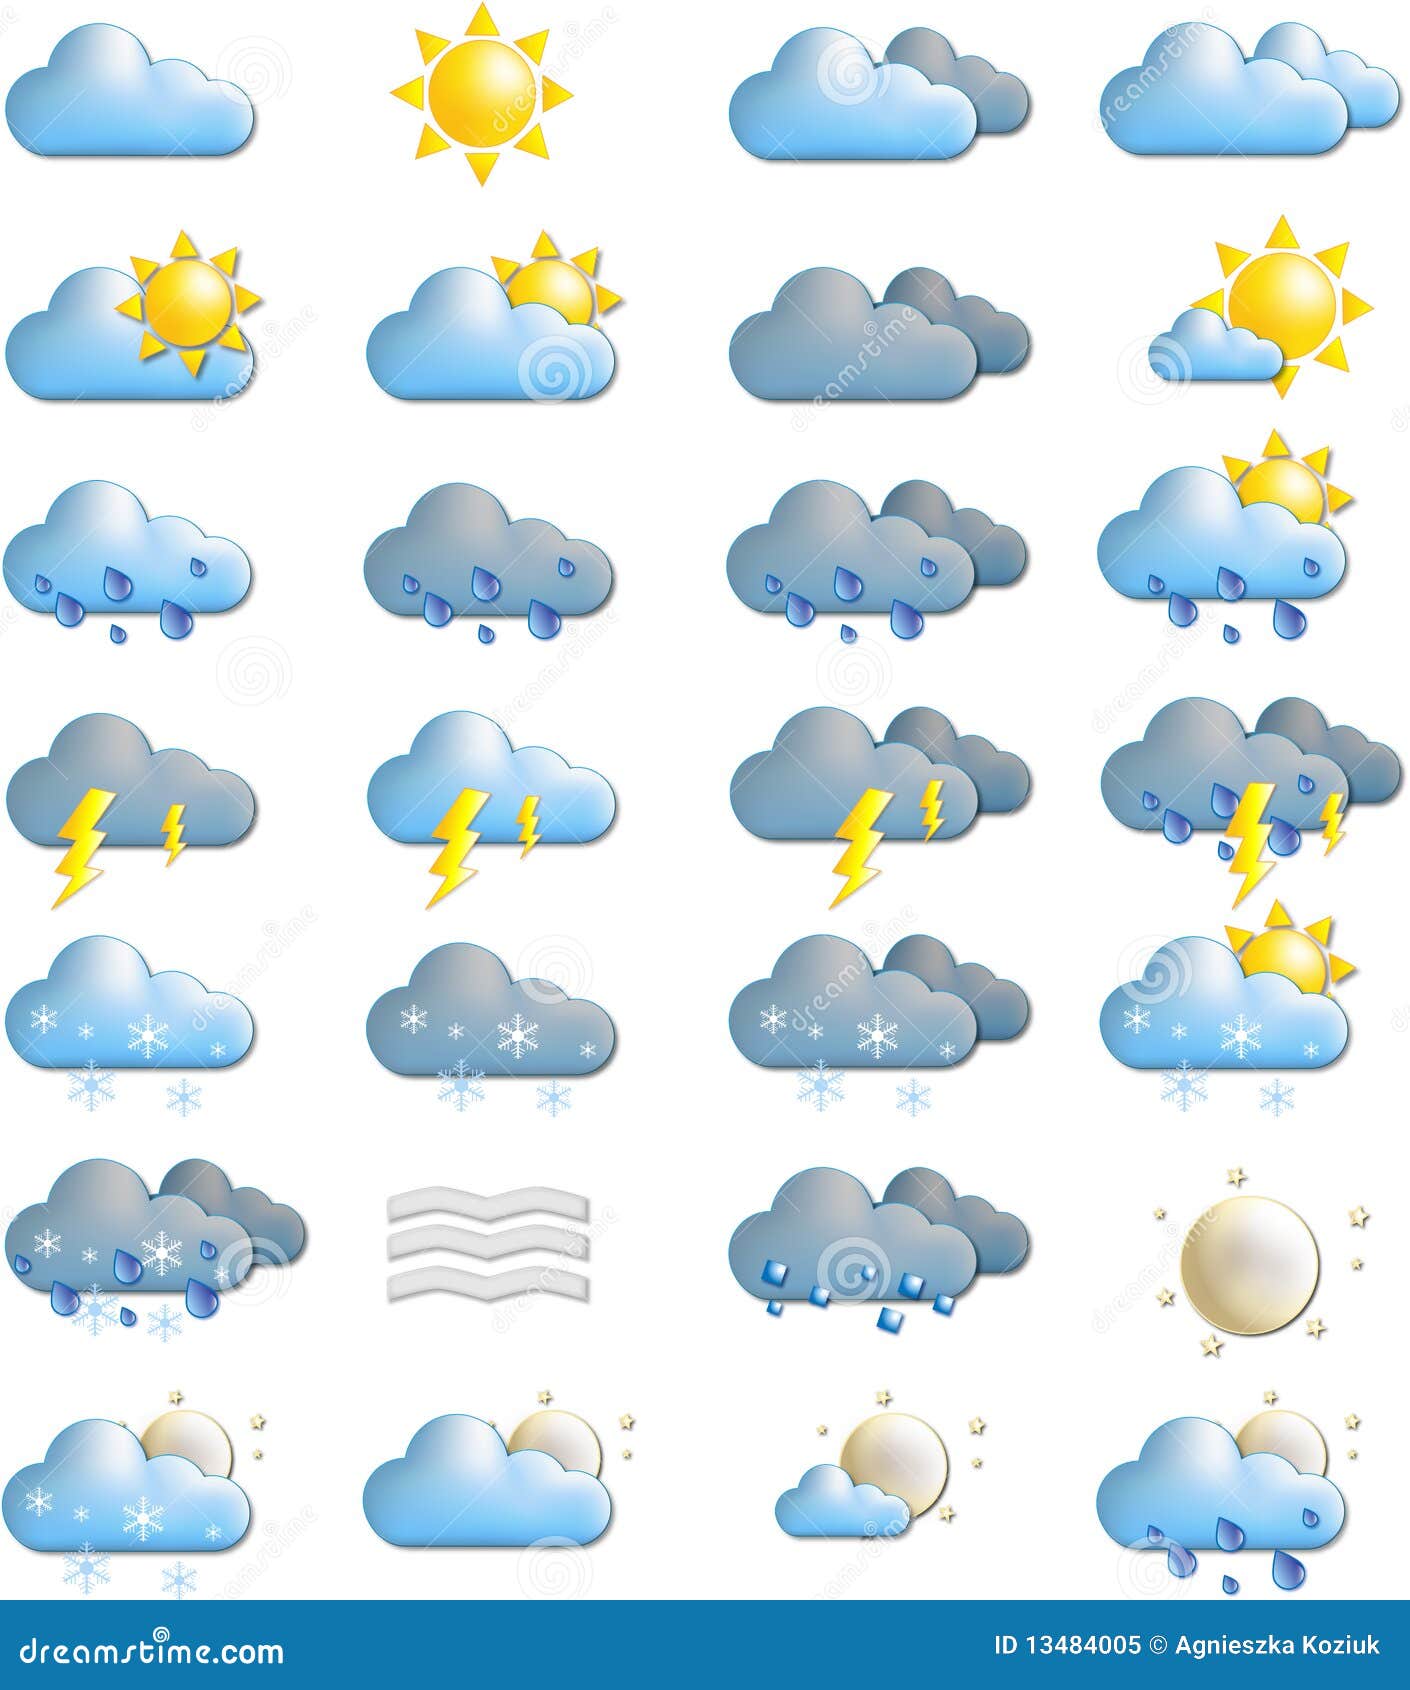 Погода пятна. Значки природных явлений. Погодные условия для детей. Погодные знаки для детей. Значки прогноза погоды.